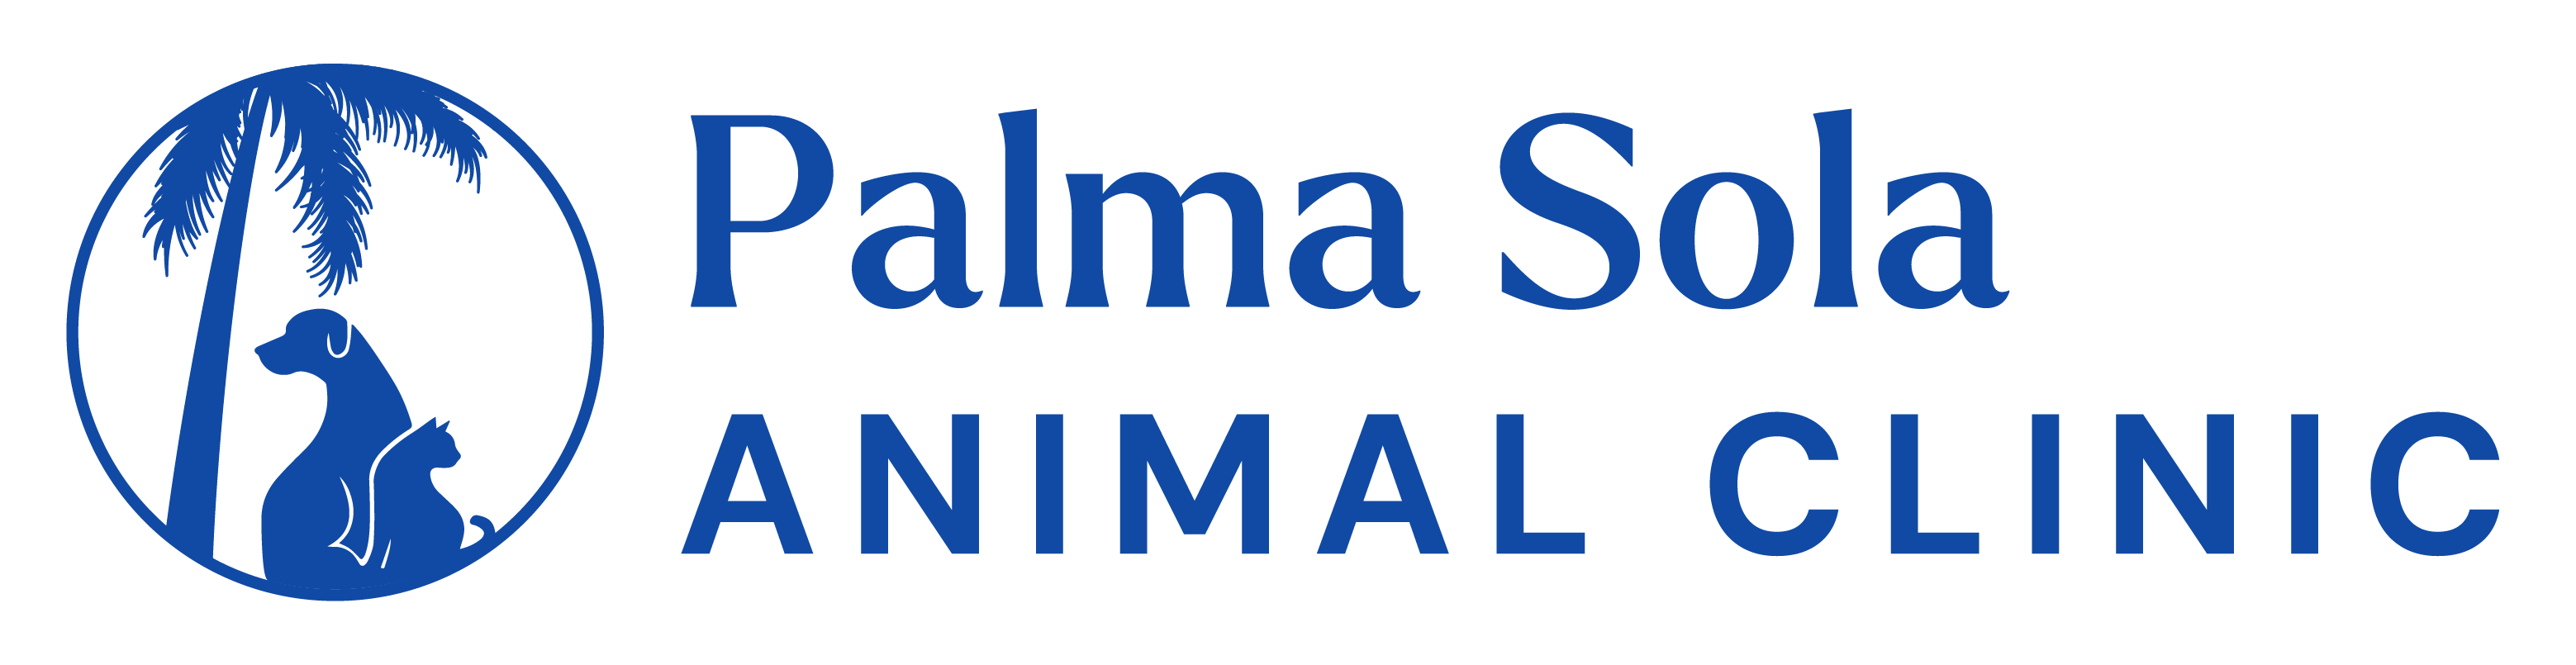 Palma Sola Animal Clinic logo